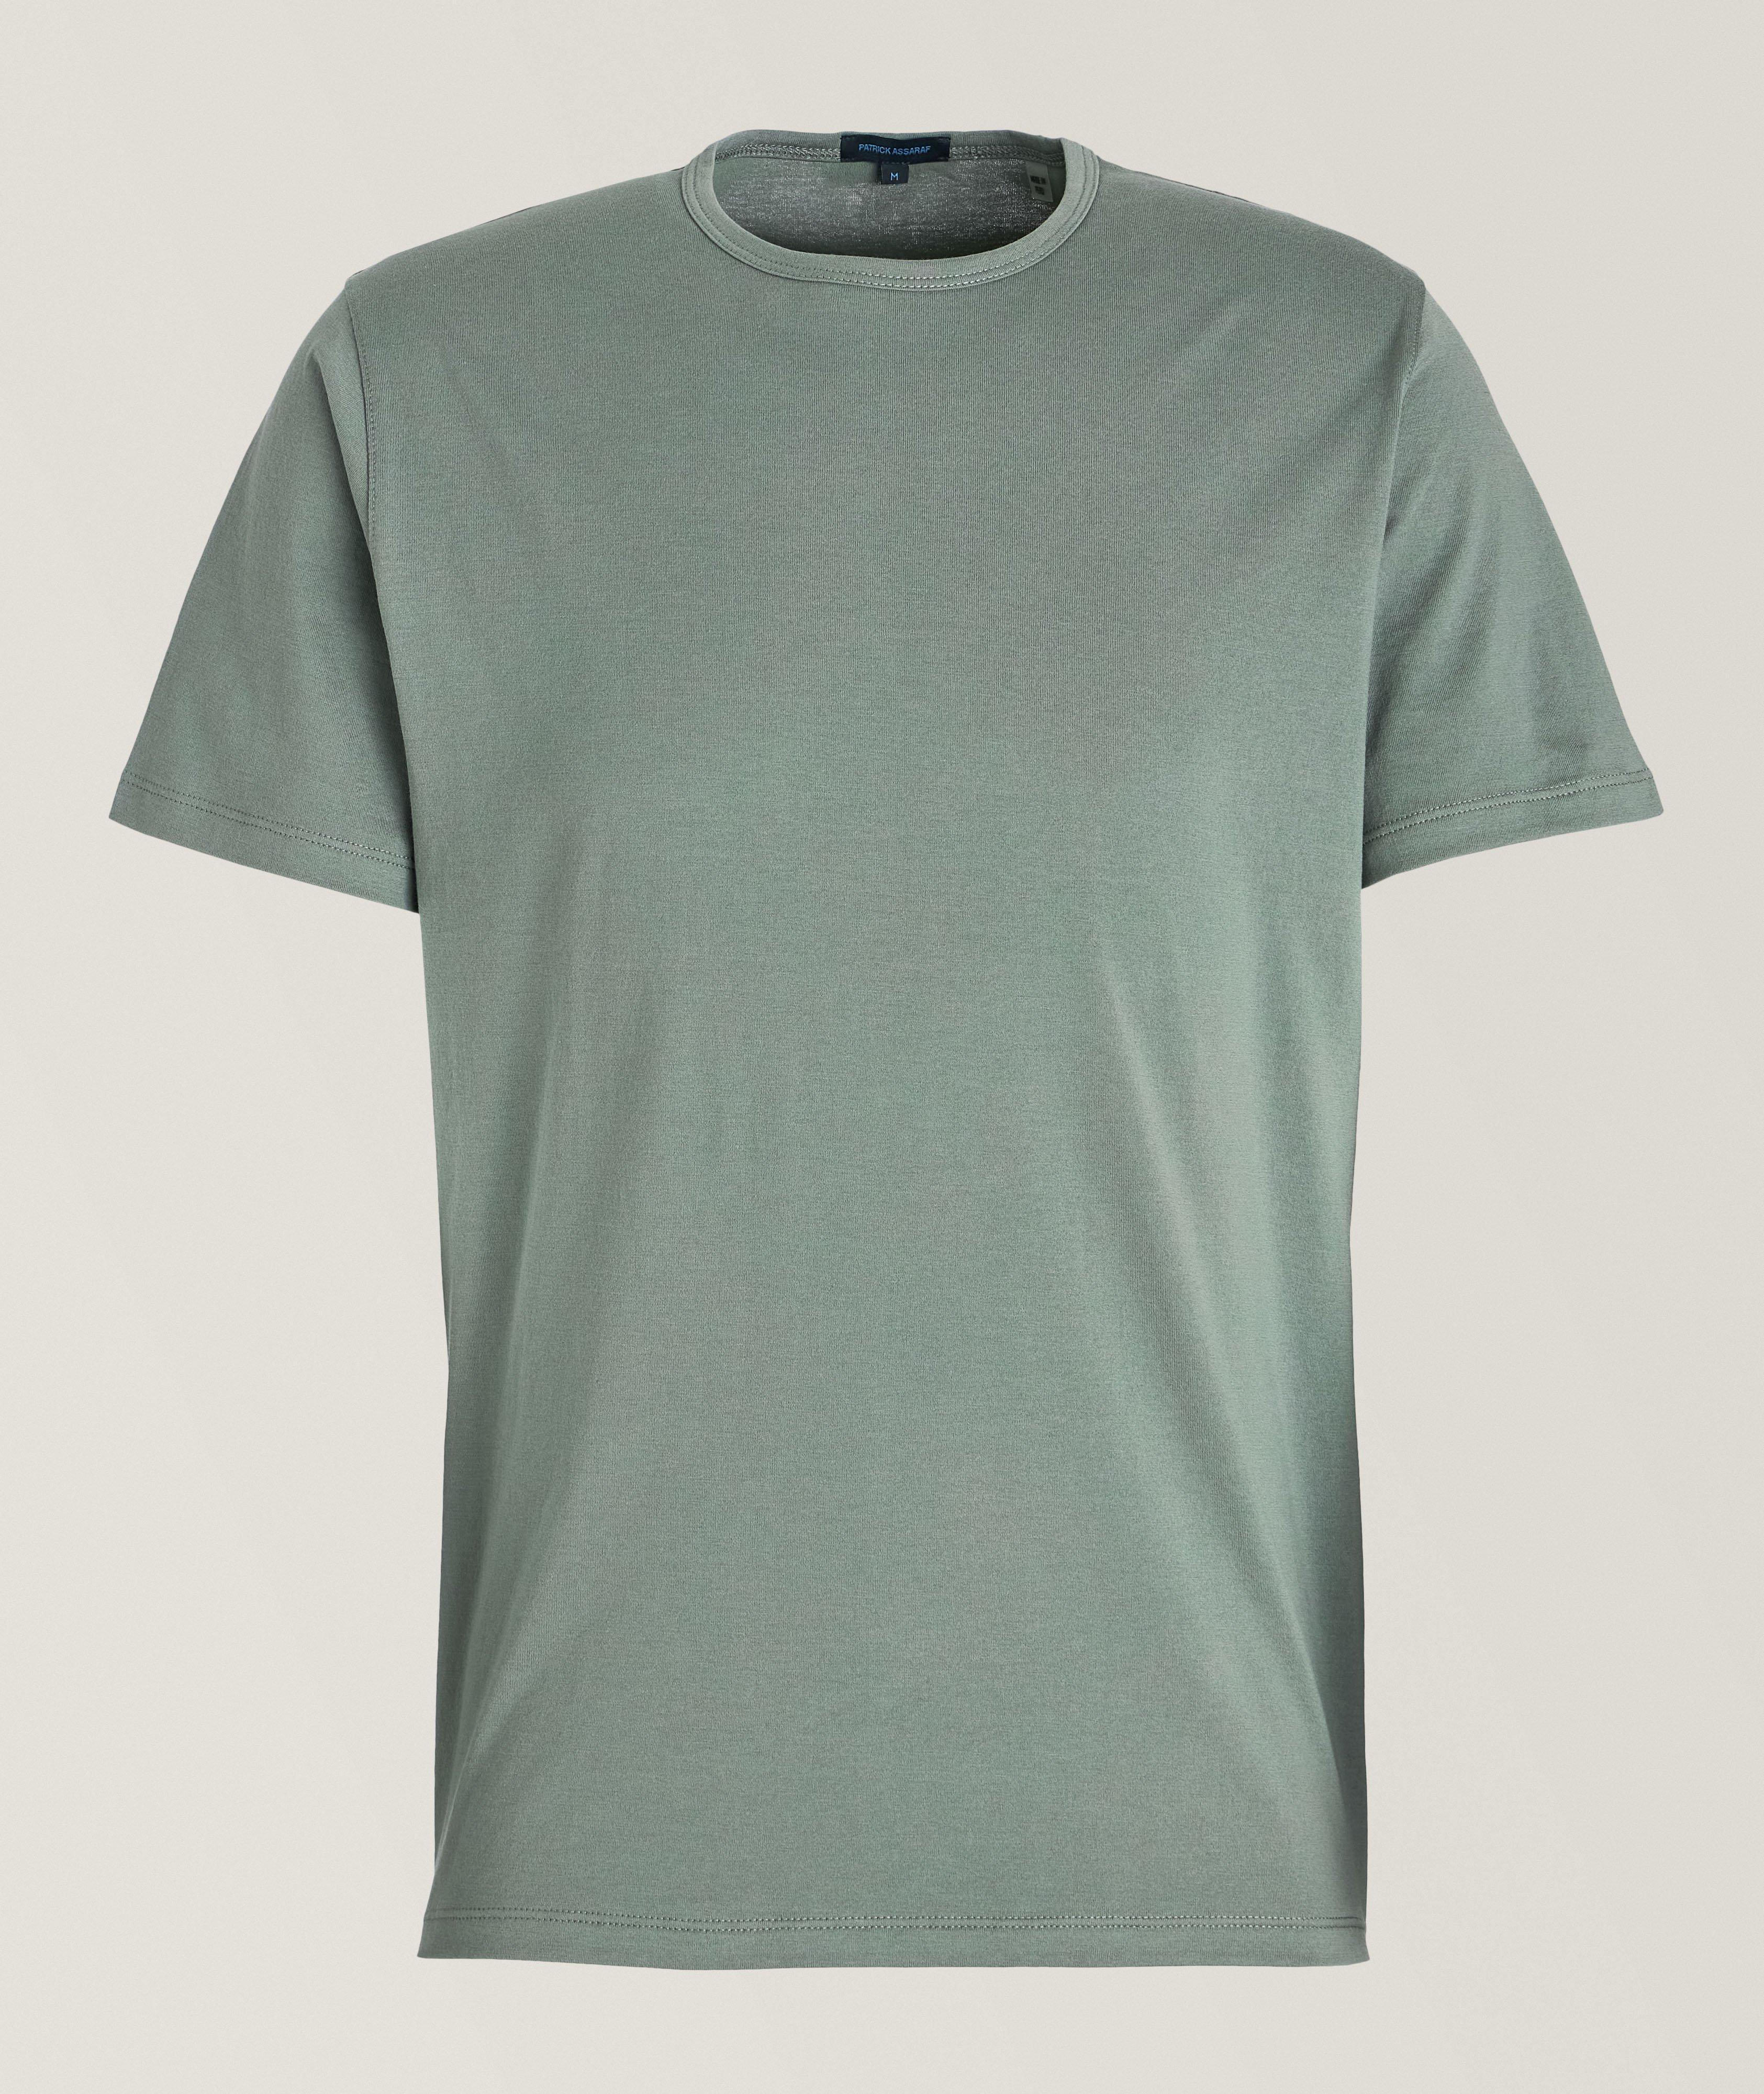 Mercerised Pima Cotton T-Shirt image 0